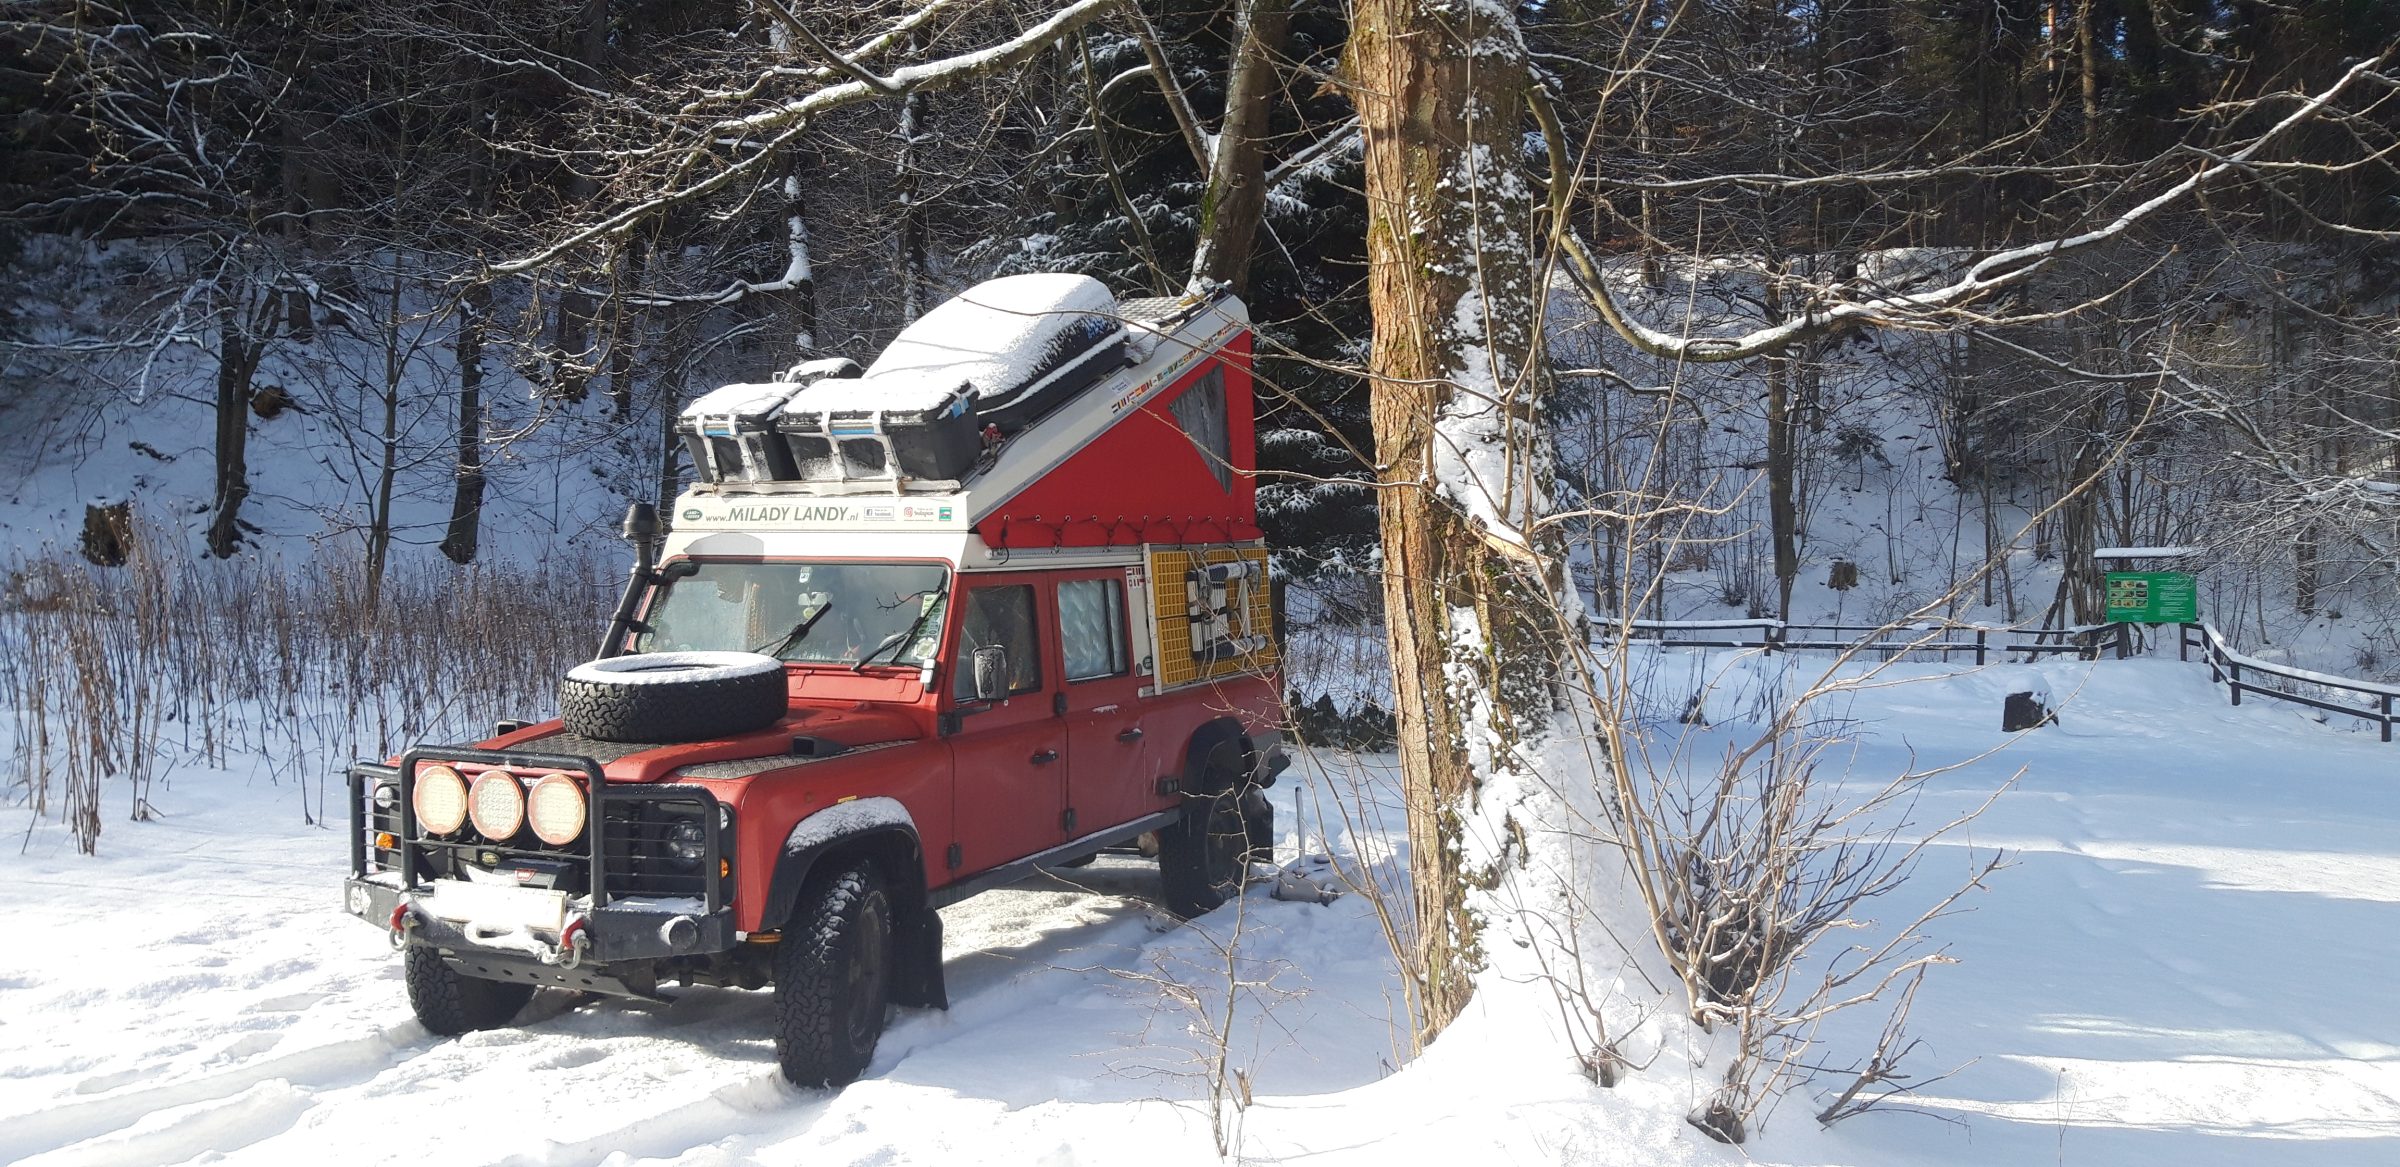 De uitrusting van de auto | Tips voor het kamperen in de winter